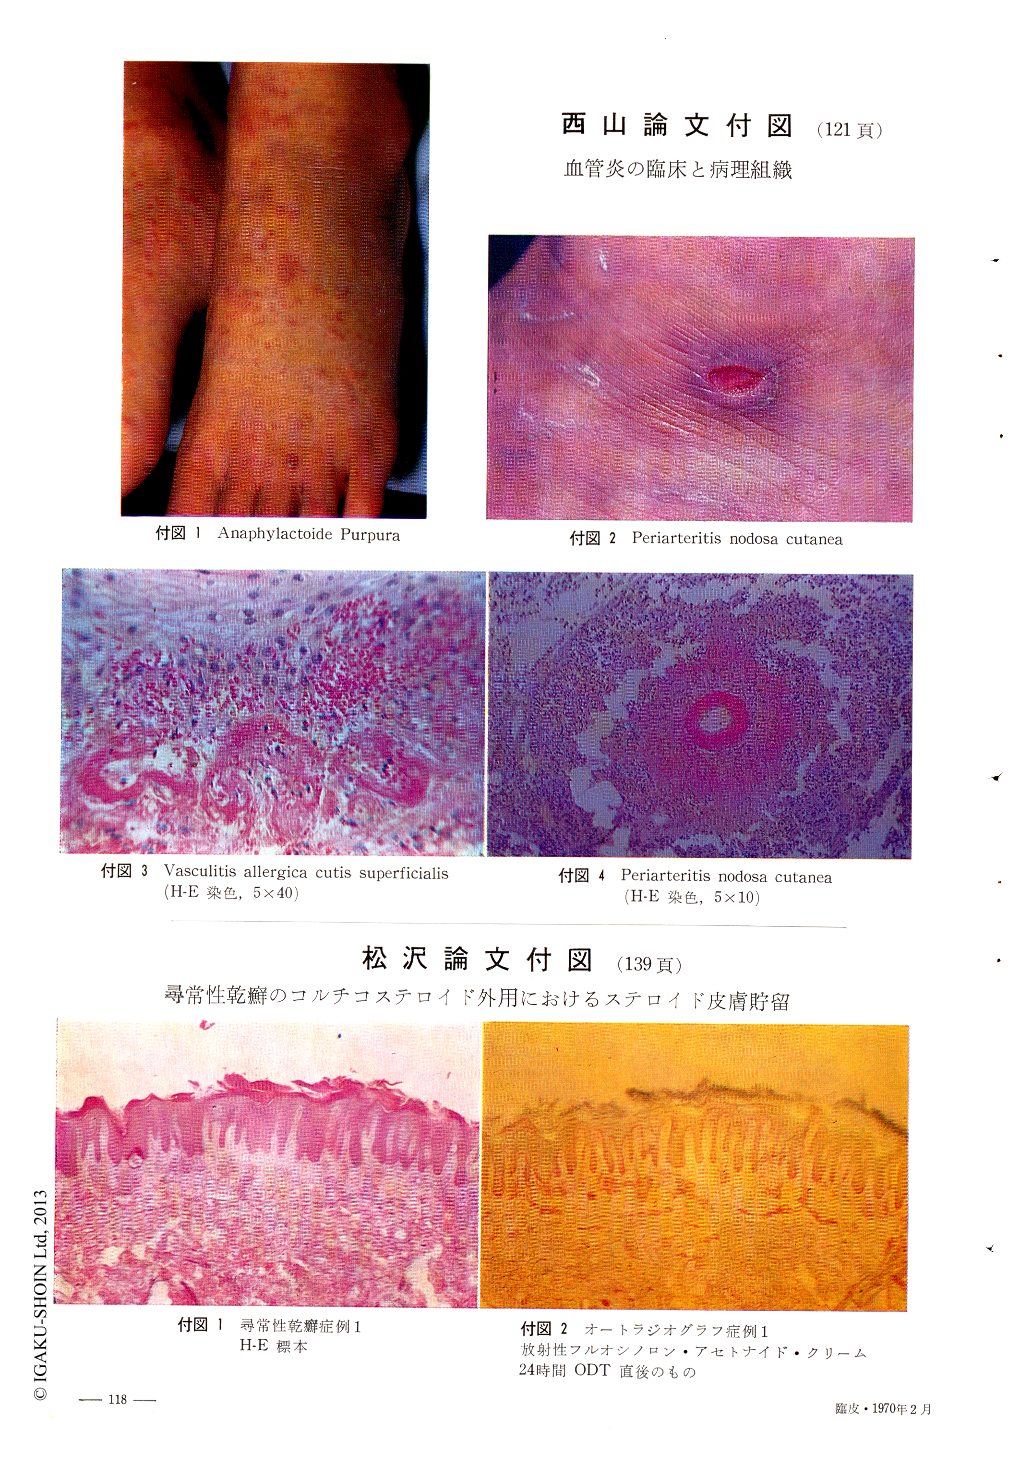 血管炎の臨床と病理組織 (臨床皮膚科 24巻2号) | 医書.jp